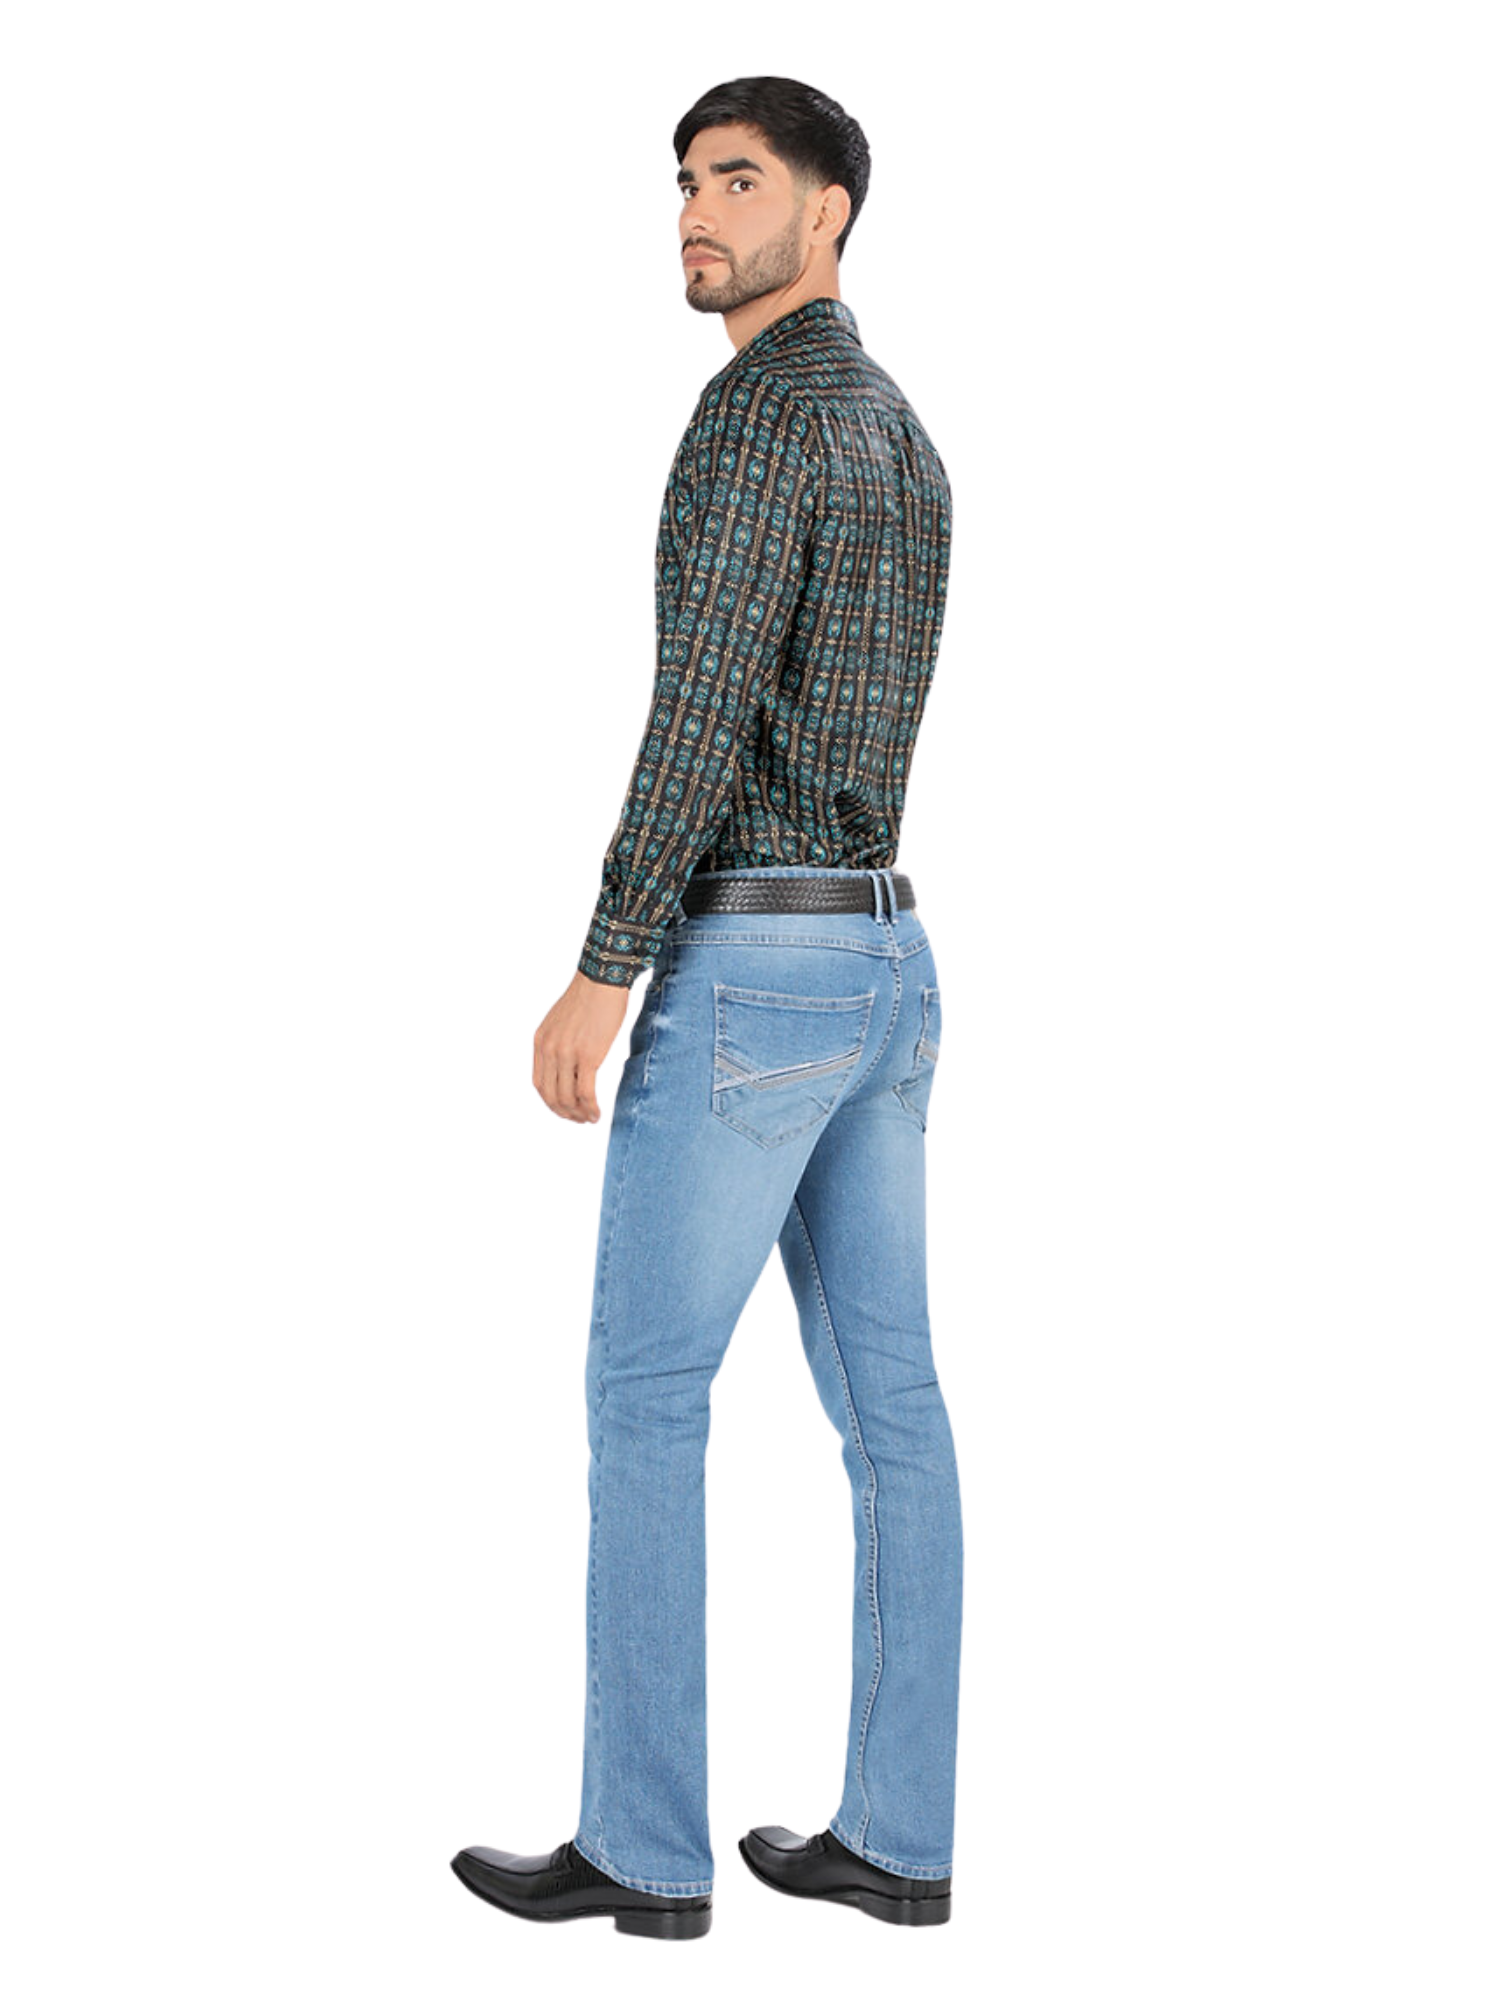 Pantalon Vaquero de Mezclilla Stretch para Hombre 'Montero' - ID: 5312 Pantalones de Vaquero Montero 